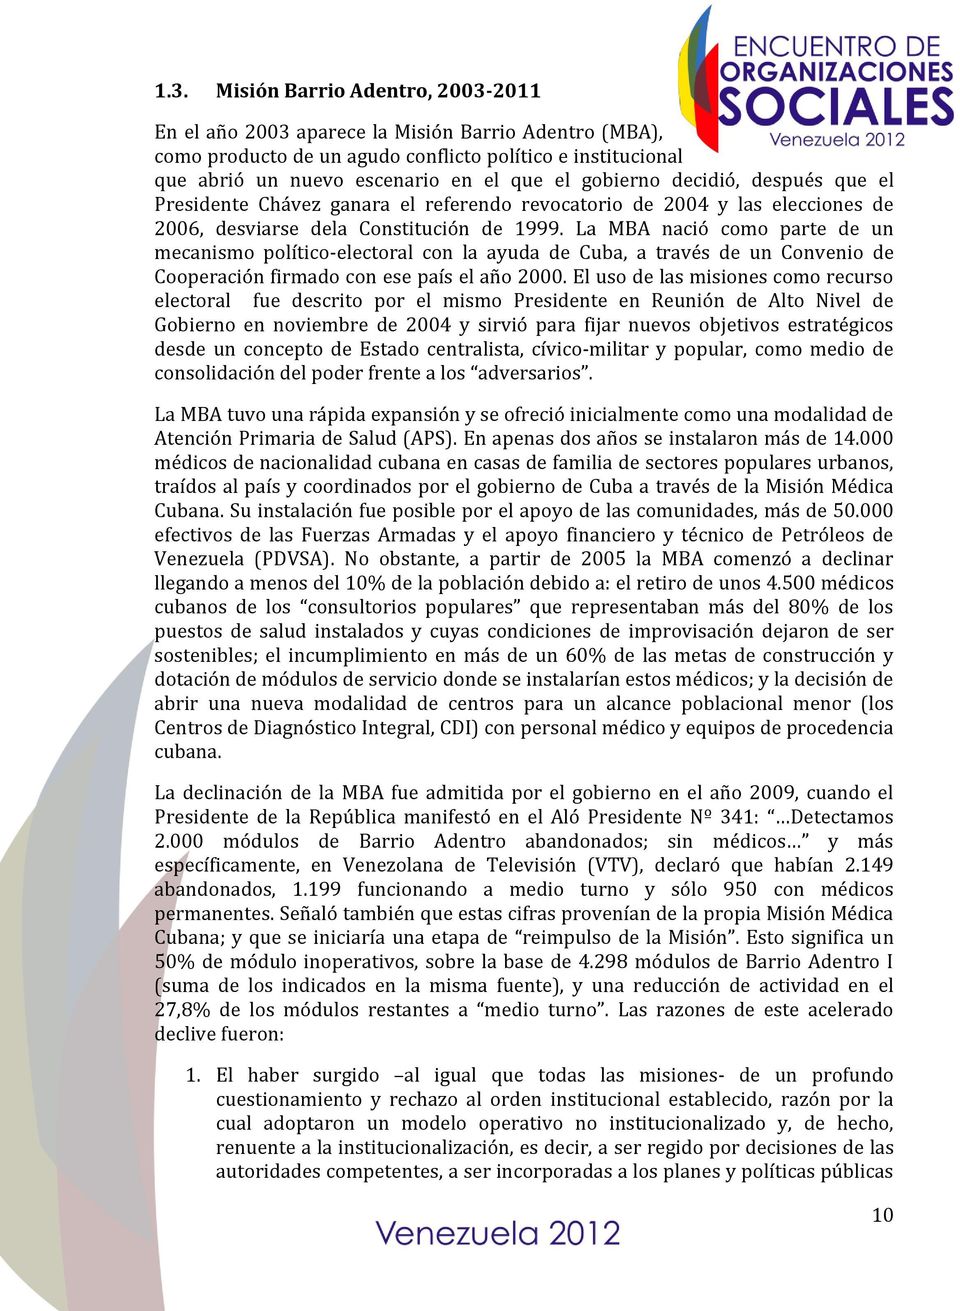 La MBA nació como parte de un mecanismo político-electoral con la ayuda de Cuba, a través de un Convenio de Cooperación firmado con ese país el año 2000.